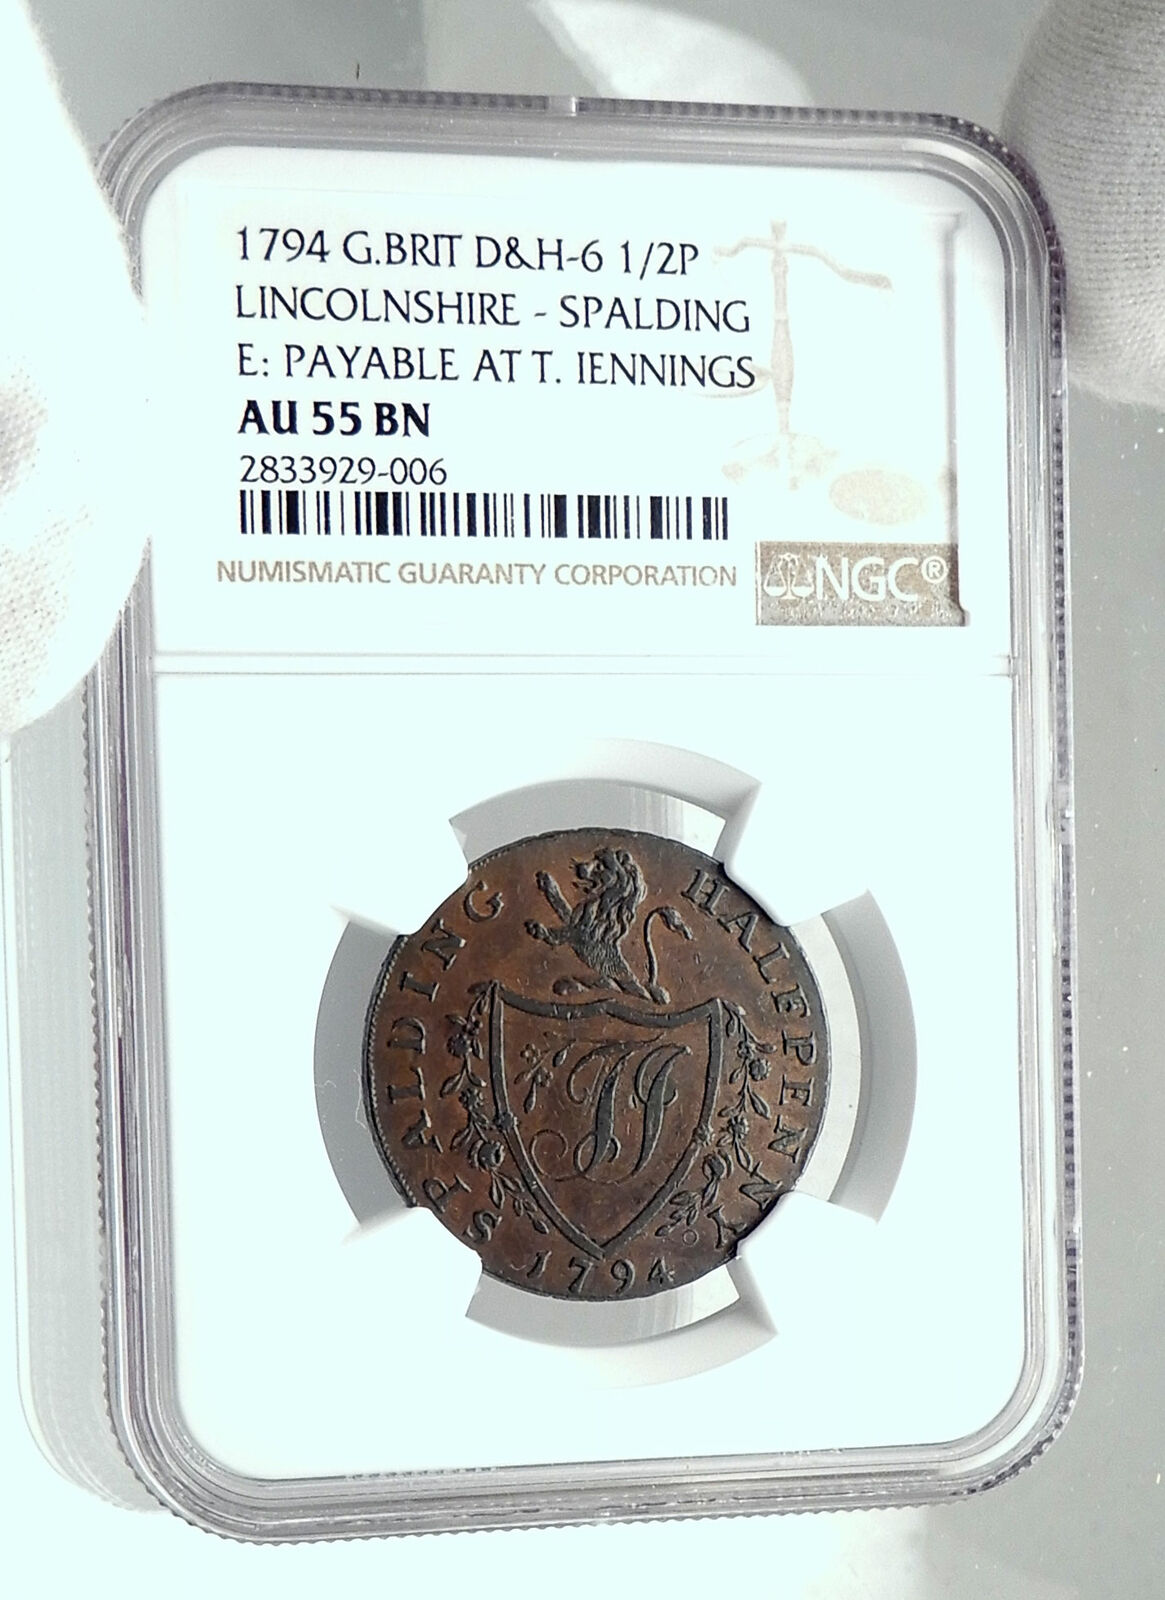 1794 ENGLAND Lincolnshire CONDER TOKEN 1/2 Penny Coin w BRITANNIA NGC i79201